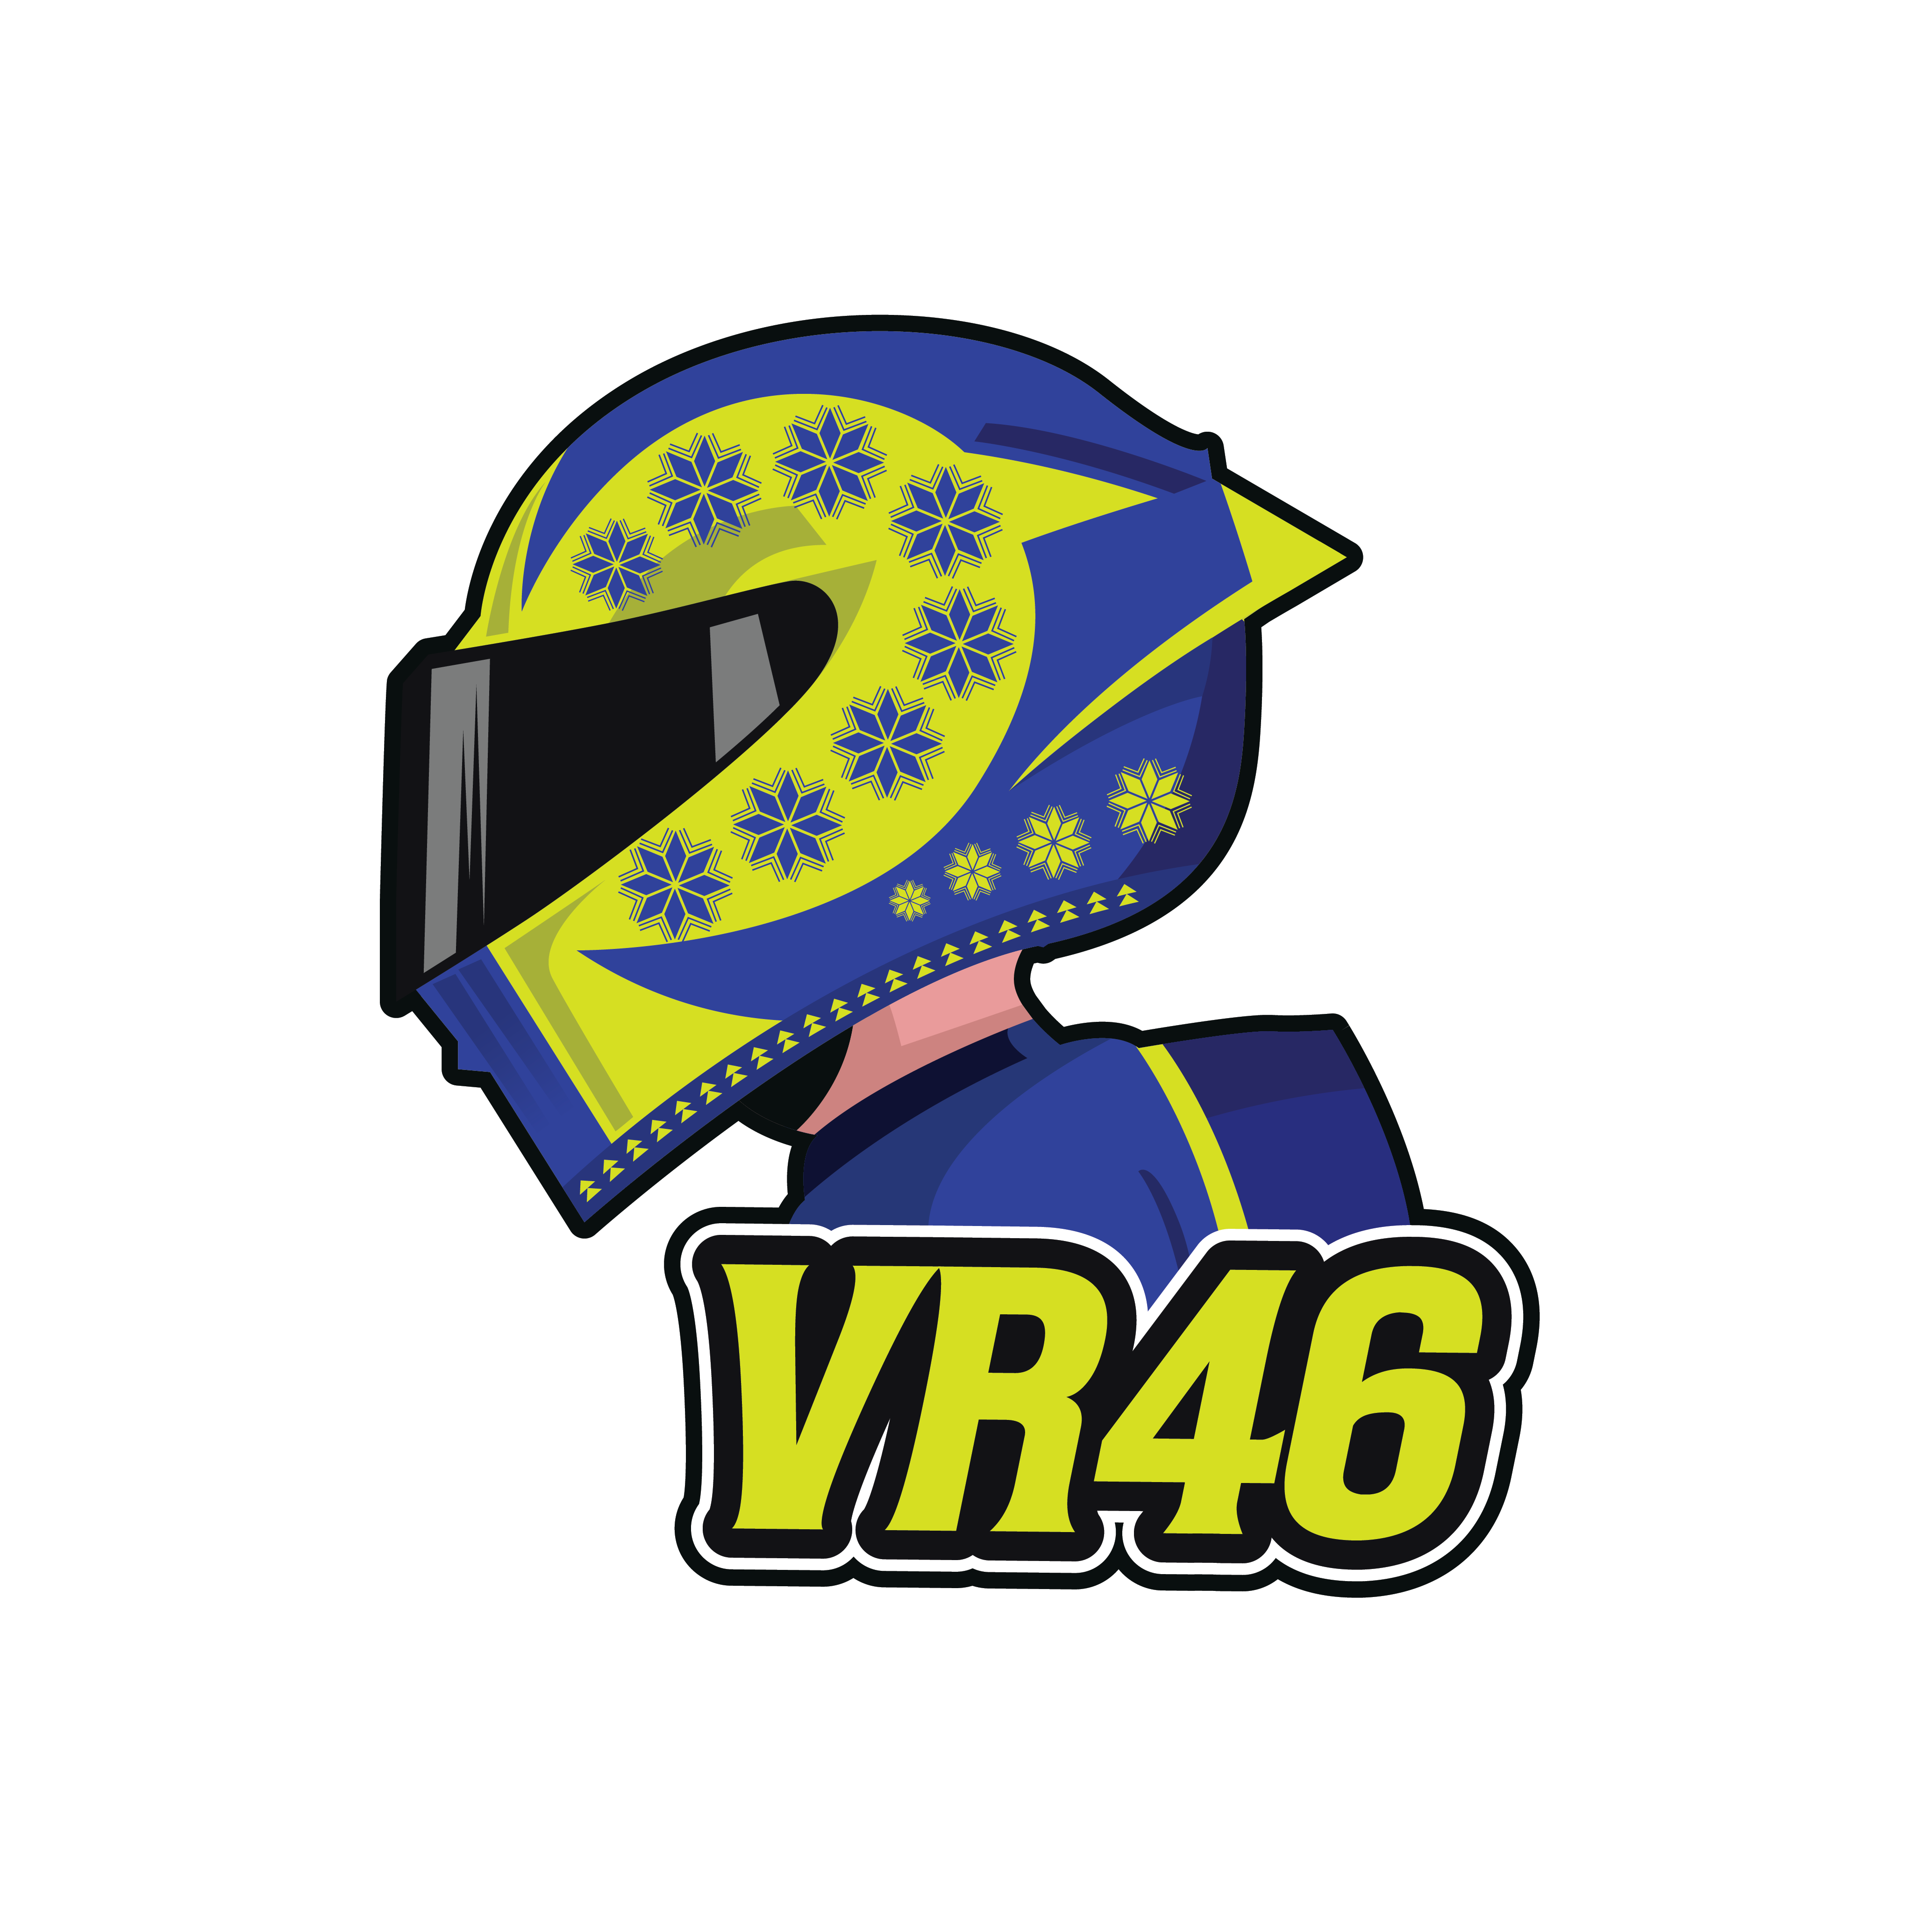 VR46 Rossi VR 46 268103 Sticker